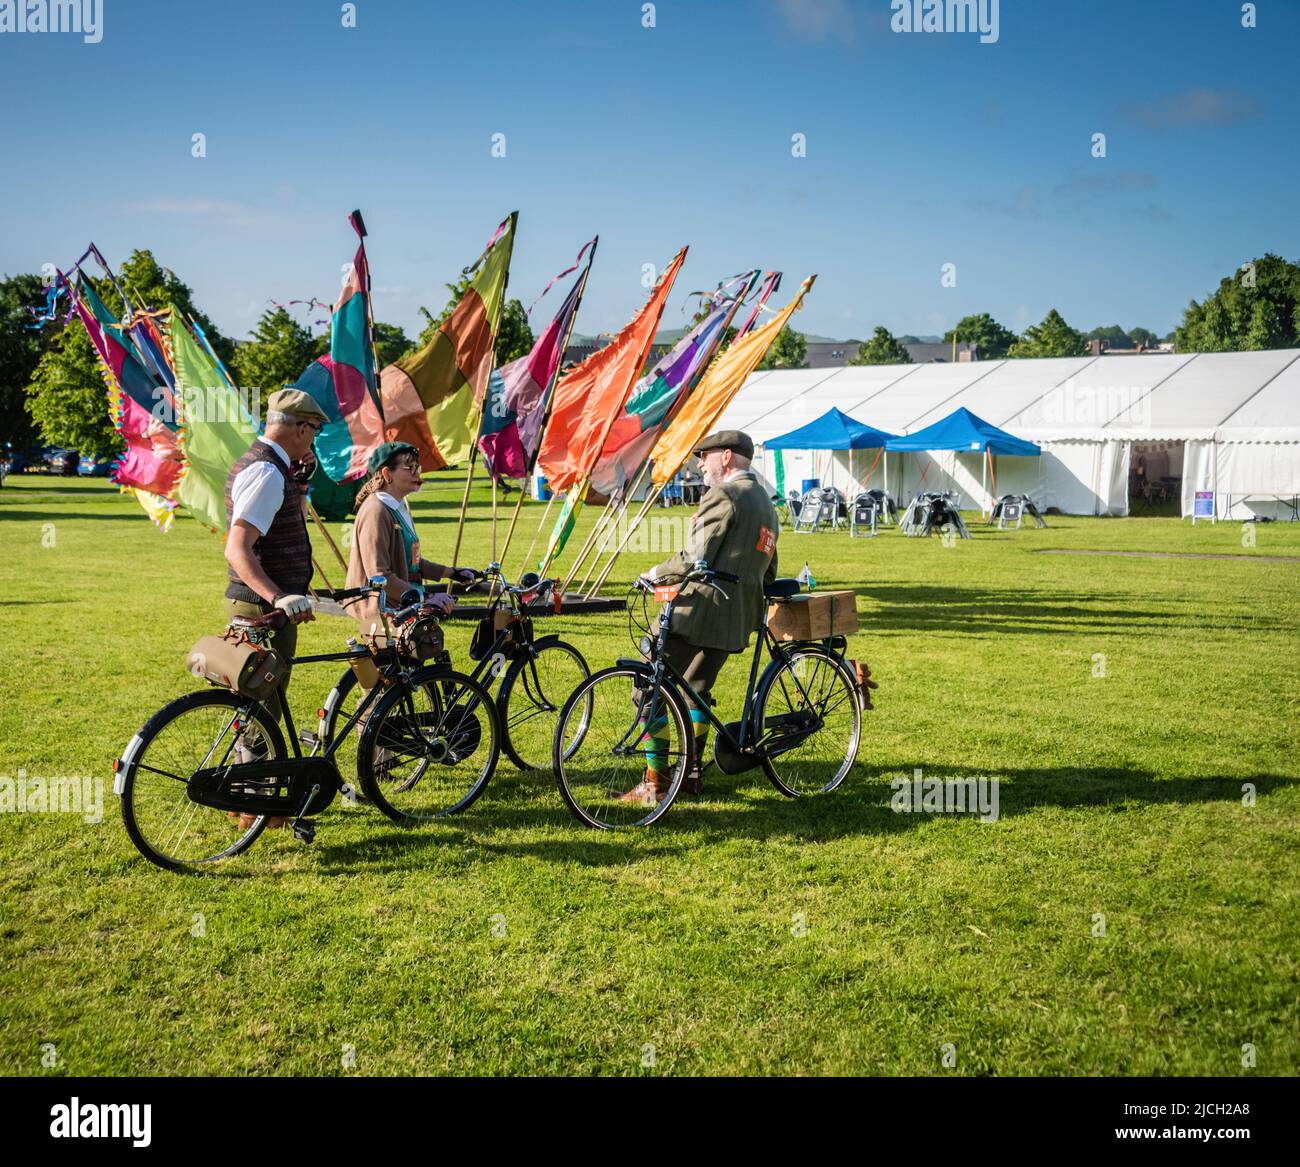 Participantes en el evento de ciclismo Veloretro Vintage, Ulverston, Cumbria, Reino Unido. Foto de stock